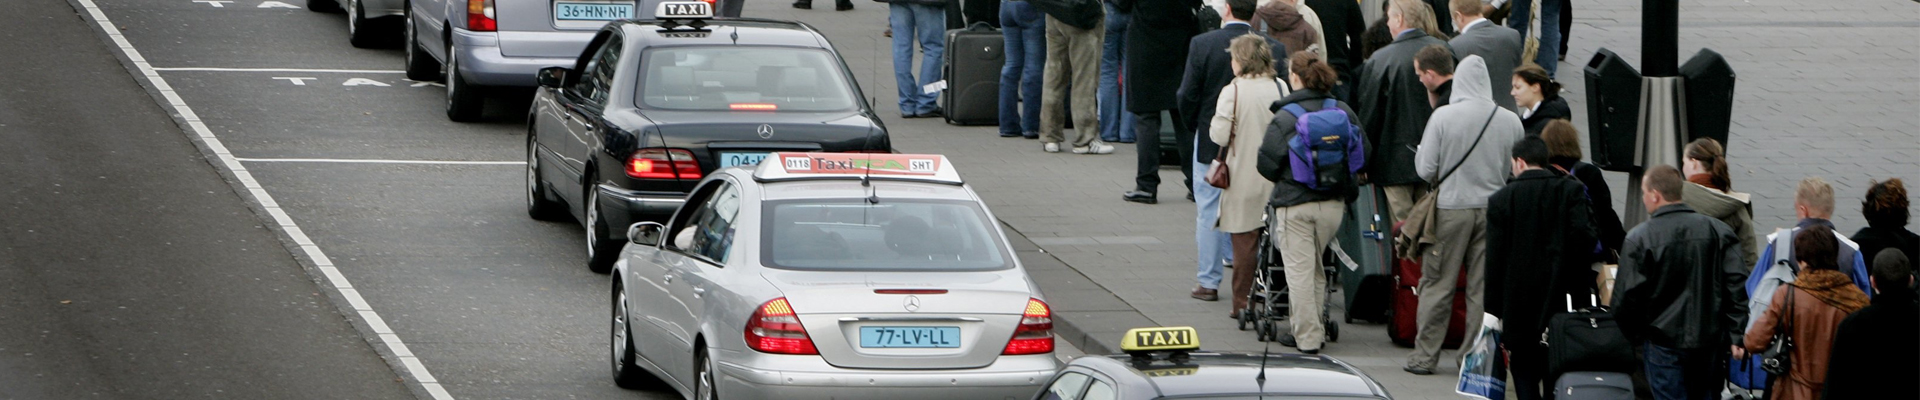 taxi-verzekering-schiphol